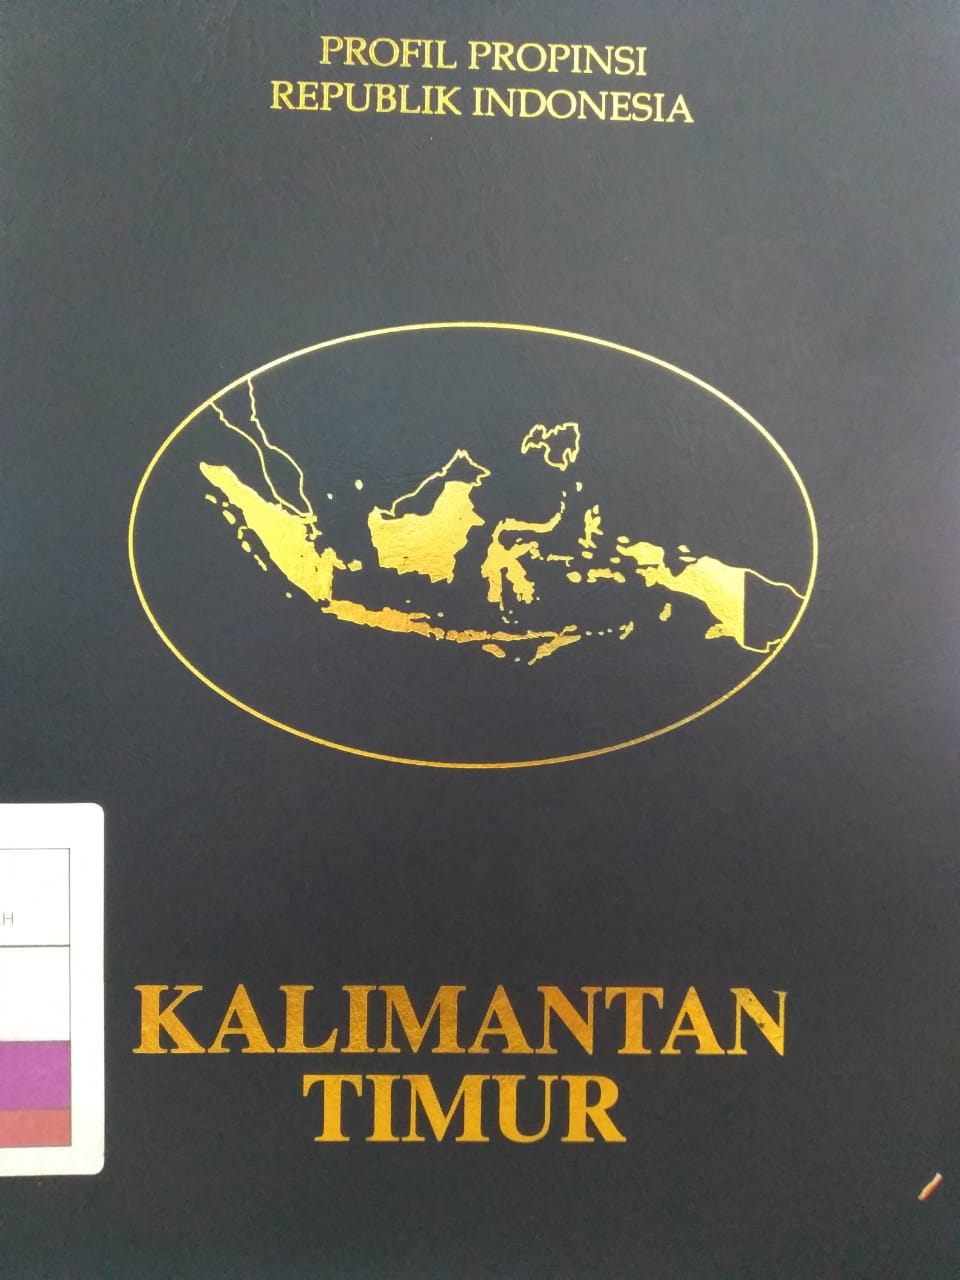 Buku profil propinsi republik Indonesia :  kalimantan timur